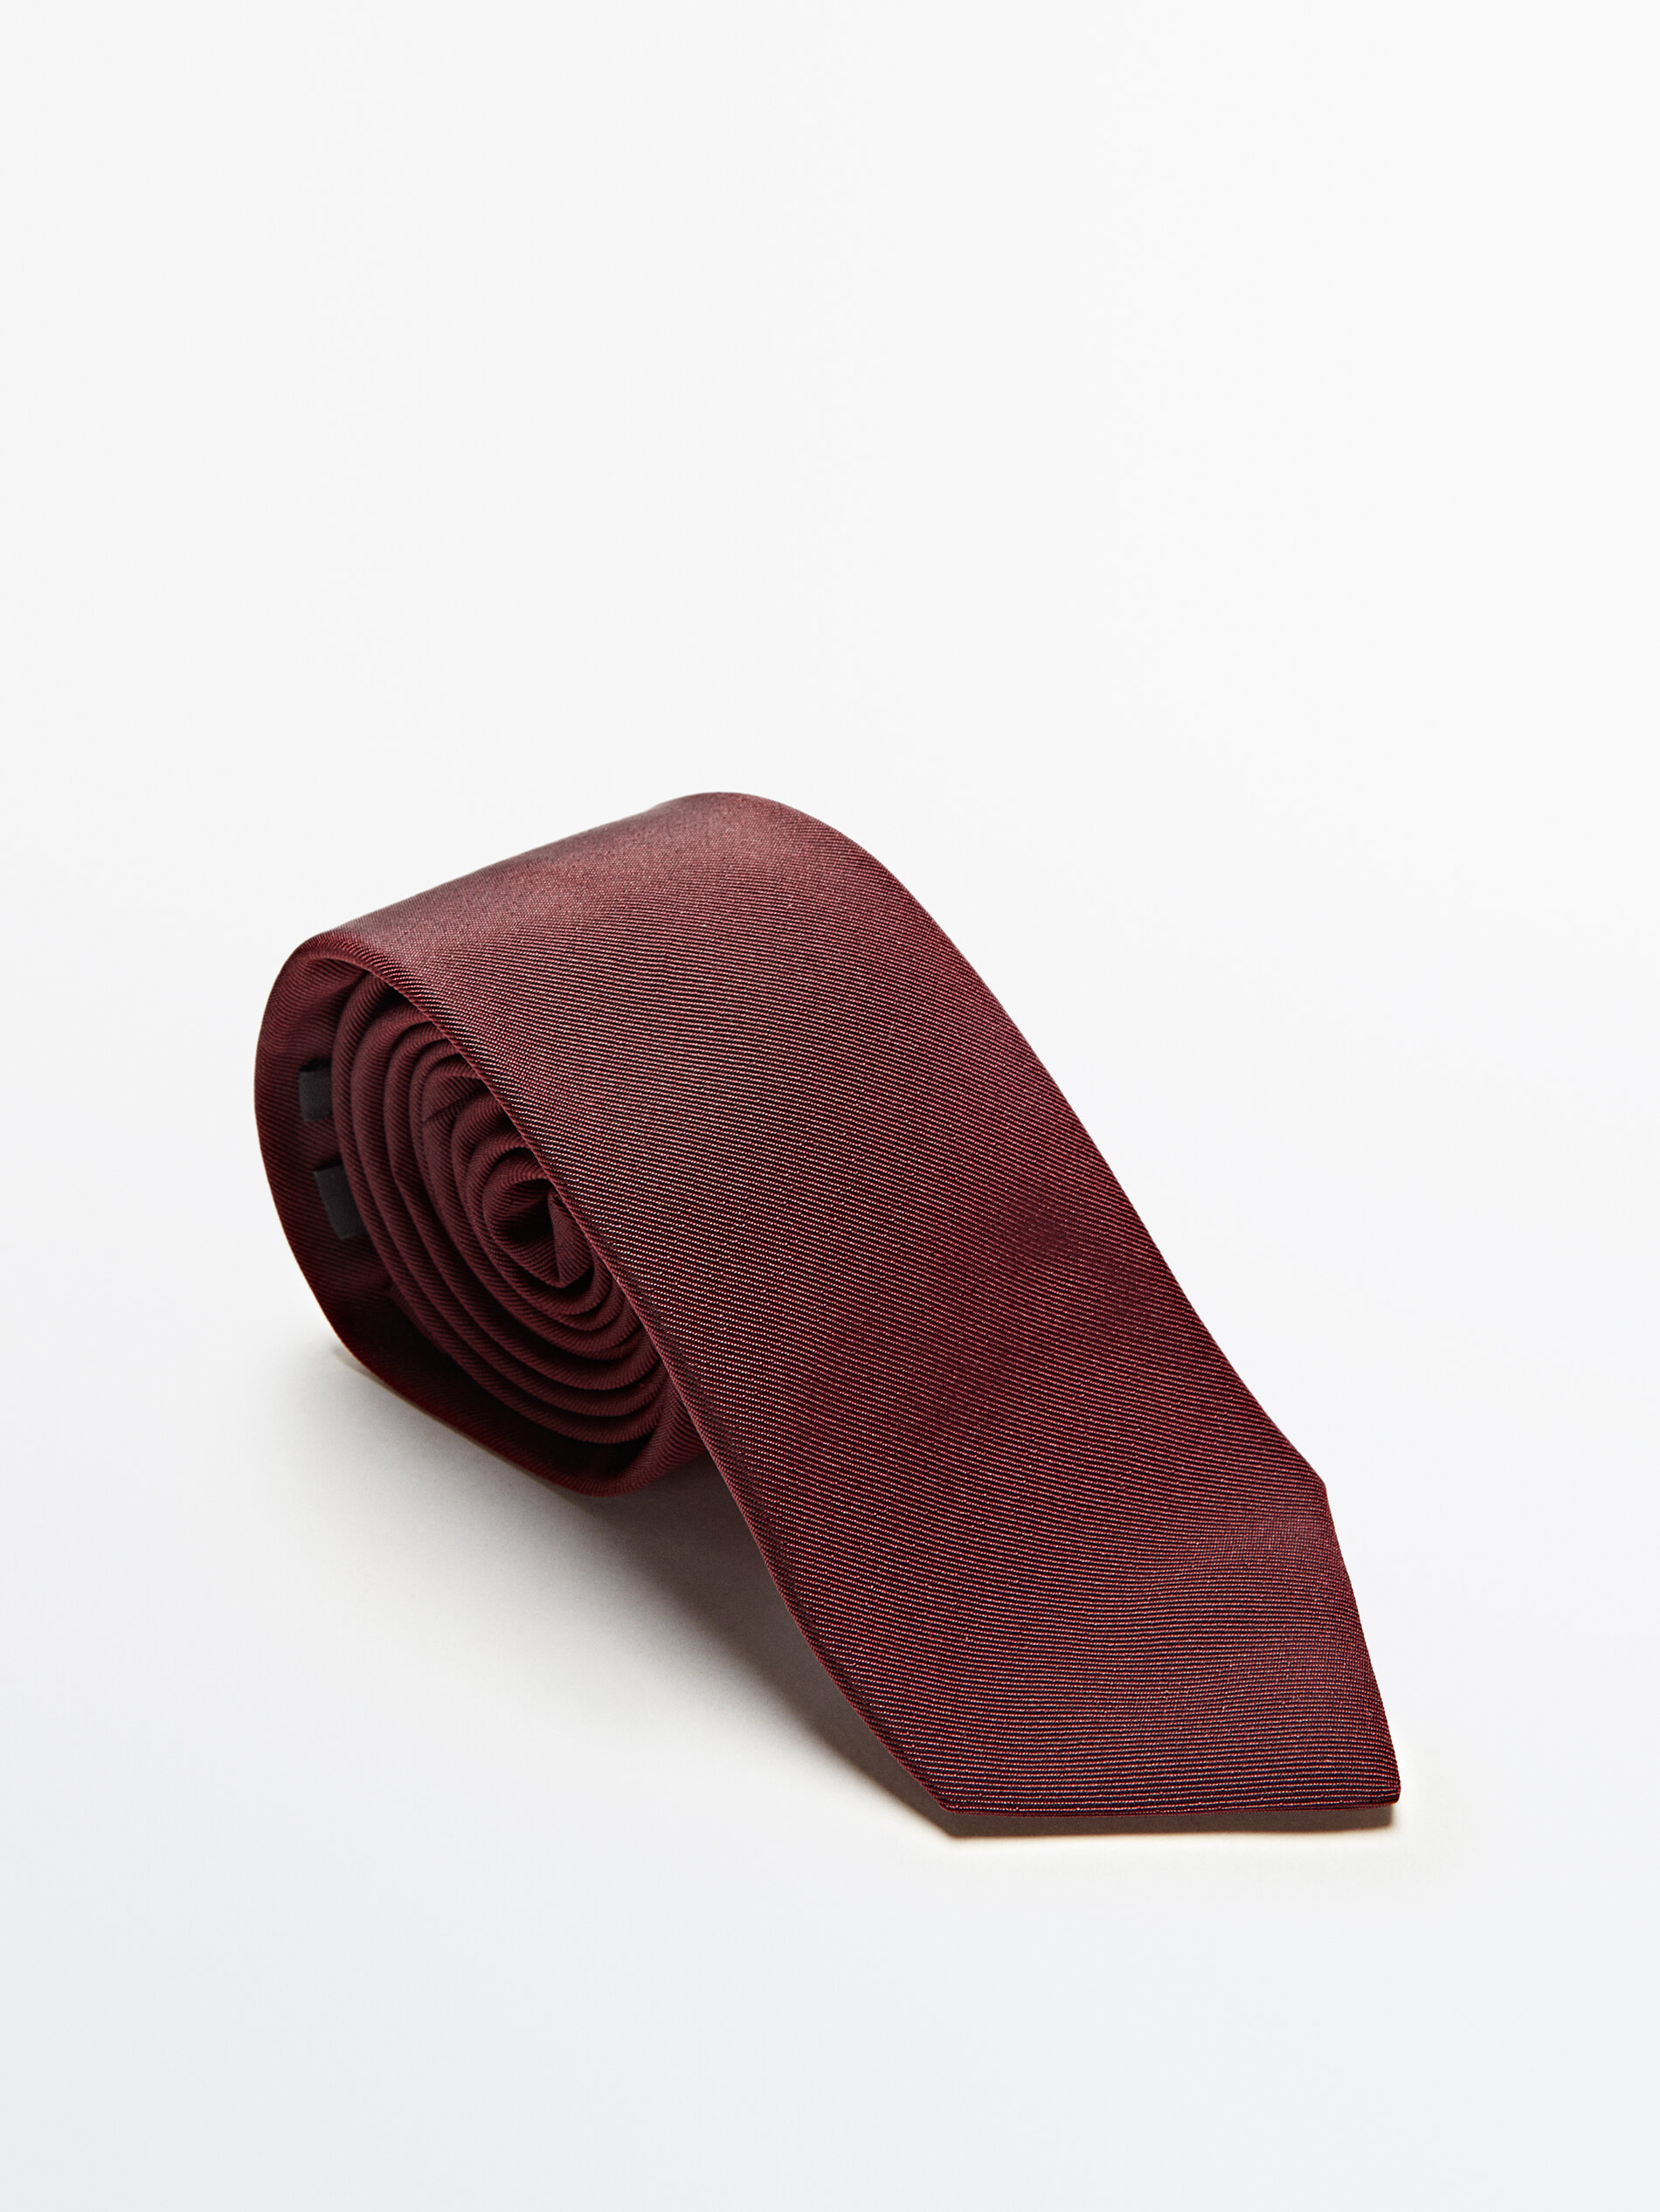 Massimo Dutti - Cotton and silk twill tie